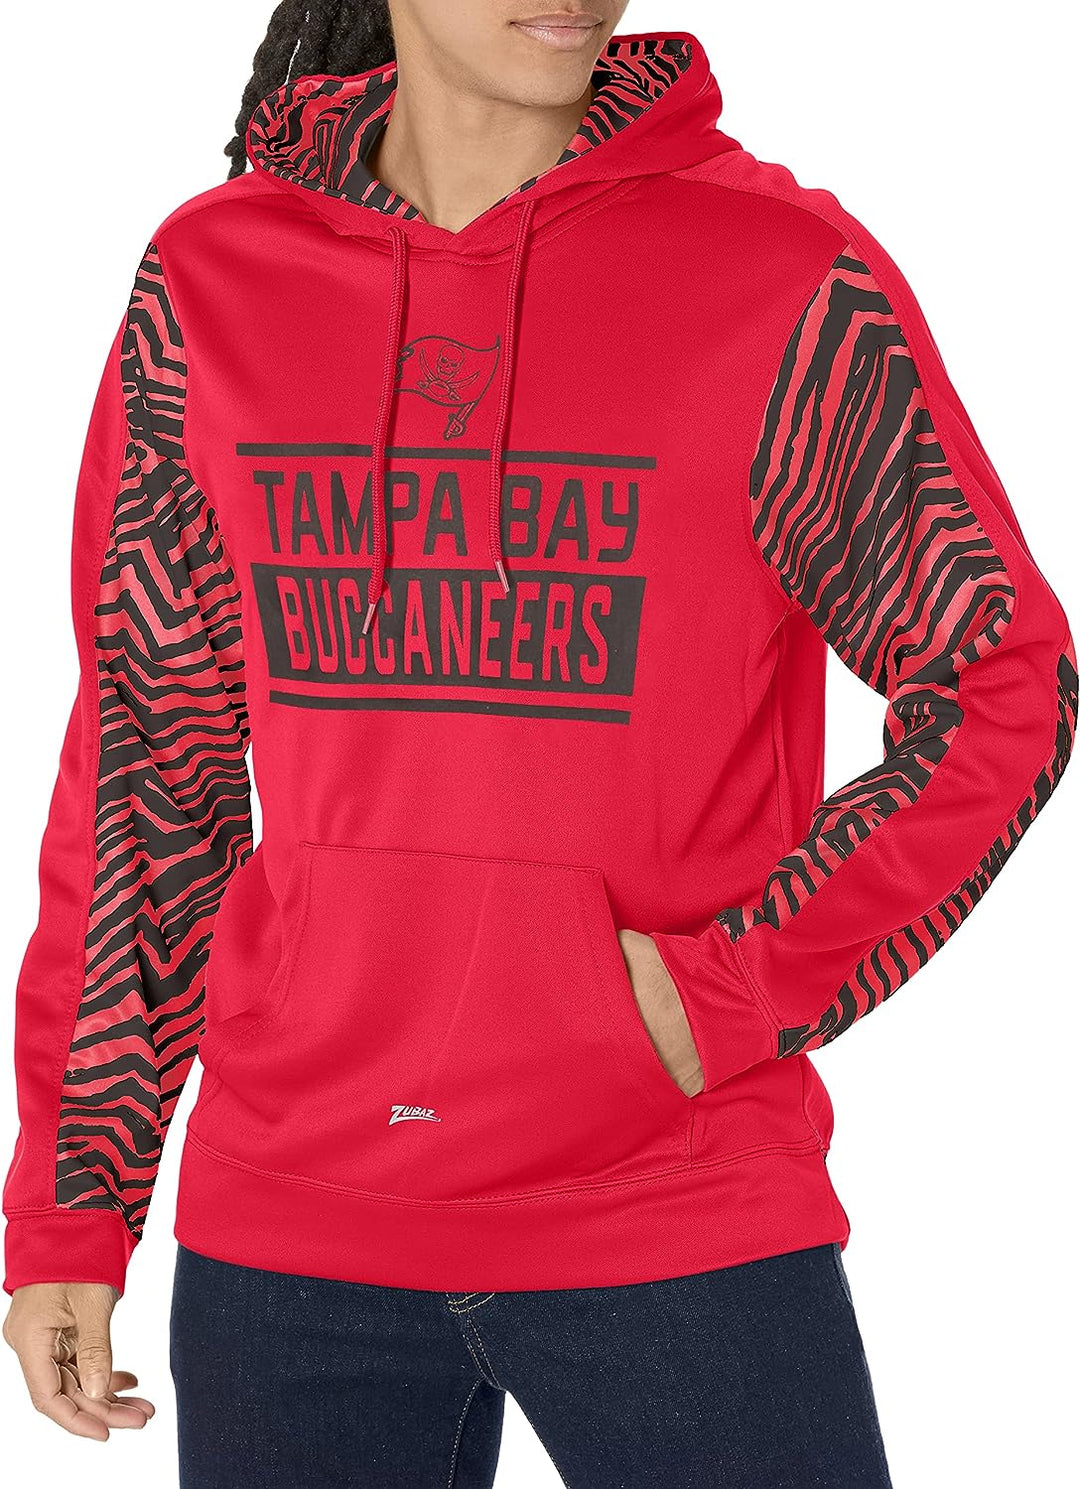 Zubaz NFL Men's Tampa Bay Buccaneers Team Color with Zebra Accents Pullover Hoodie